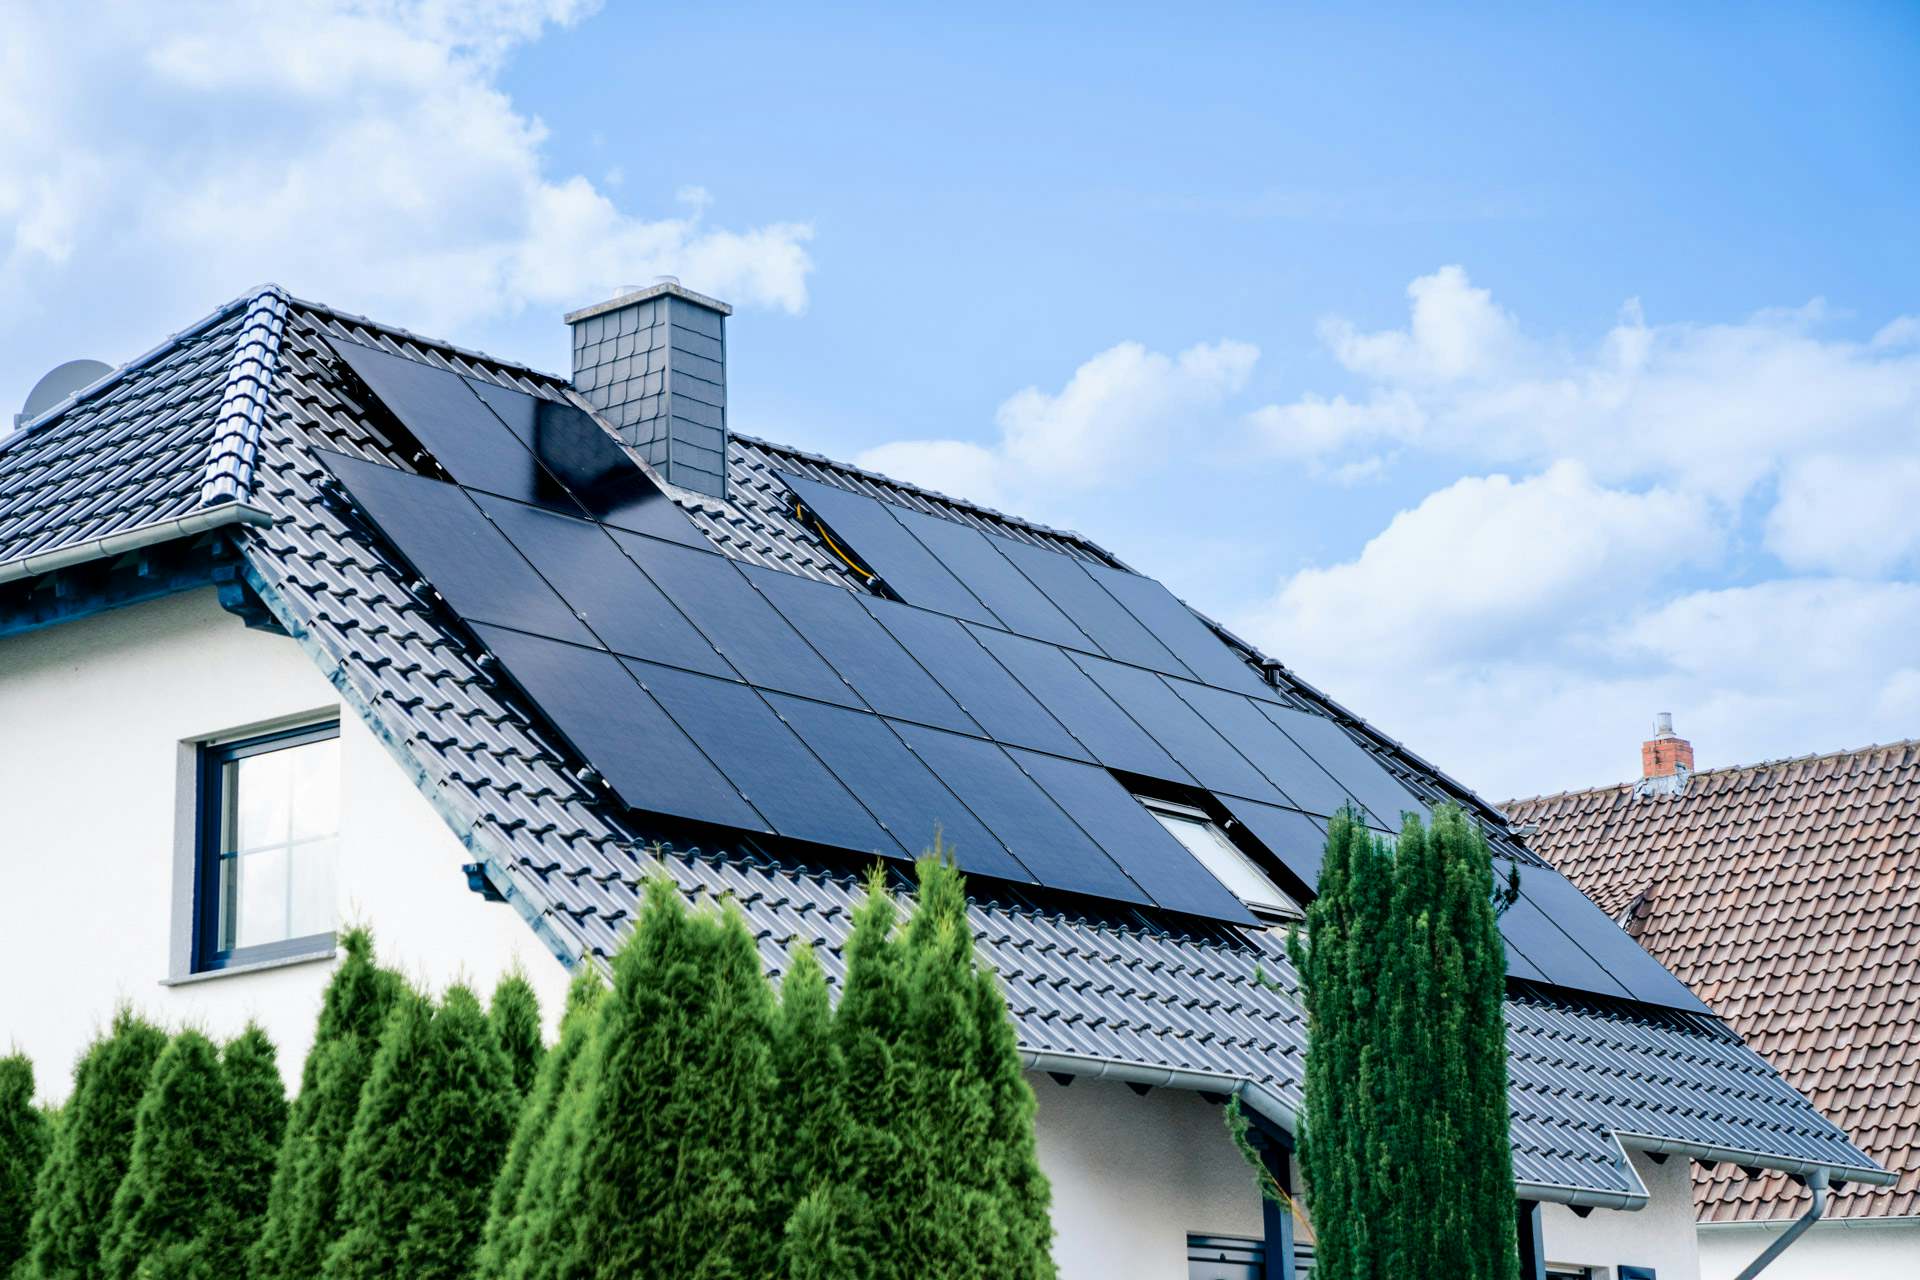 Casa con una instalación de placas solares en su tejado